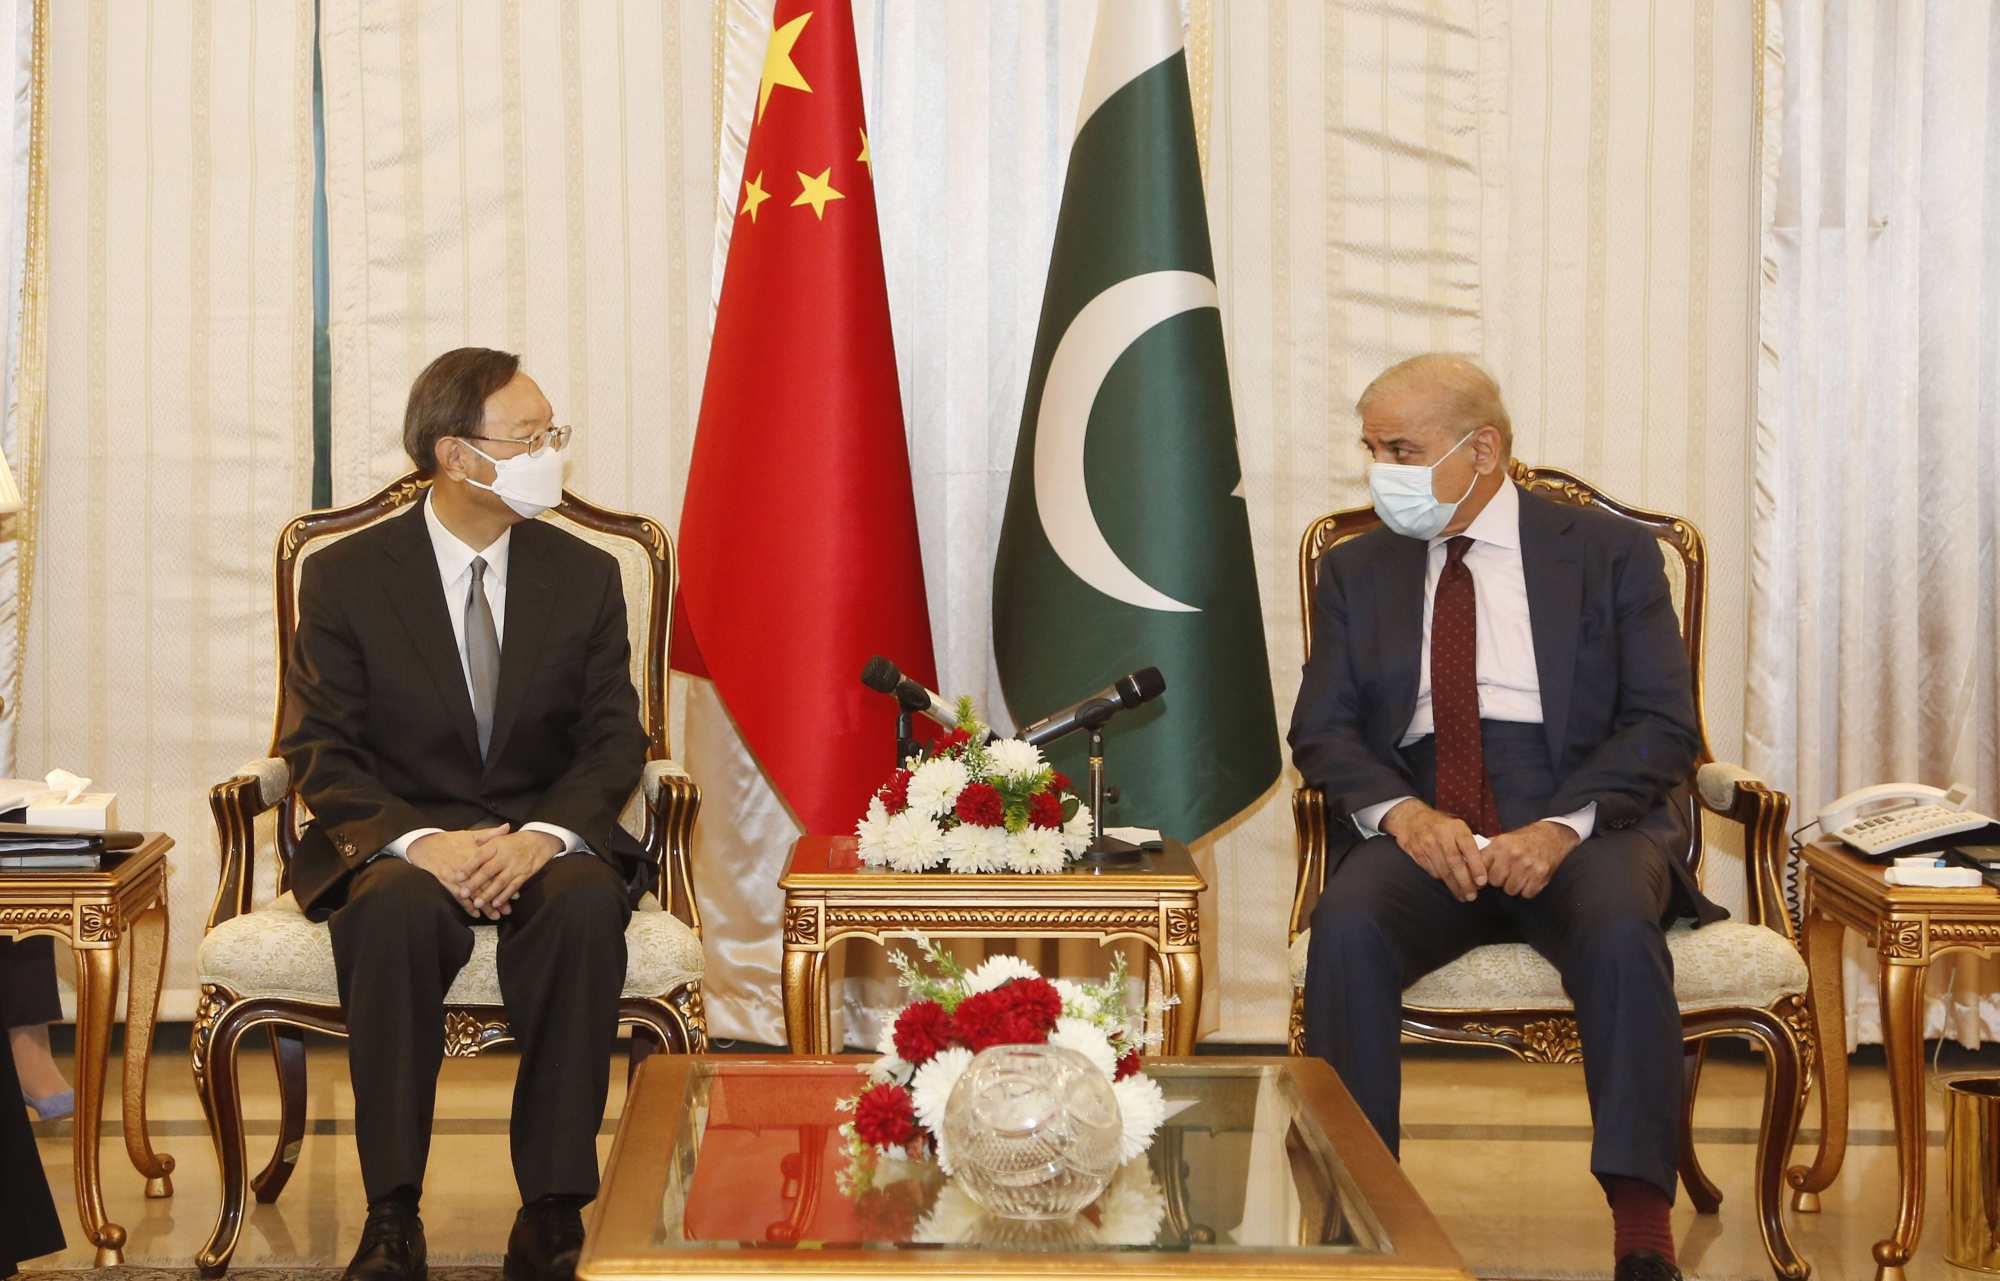 Ông Dương Khiết Trì - một nhà ngoại giao hàng đầu Trung Quốc - hội kiến Thủ tướng Pakistan hồi tháng 6. Ảnh: Tân Hoa xã